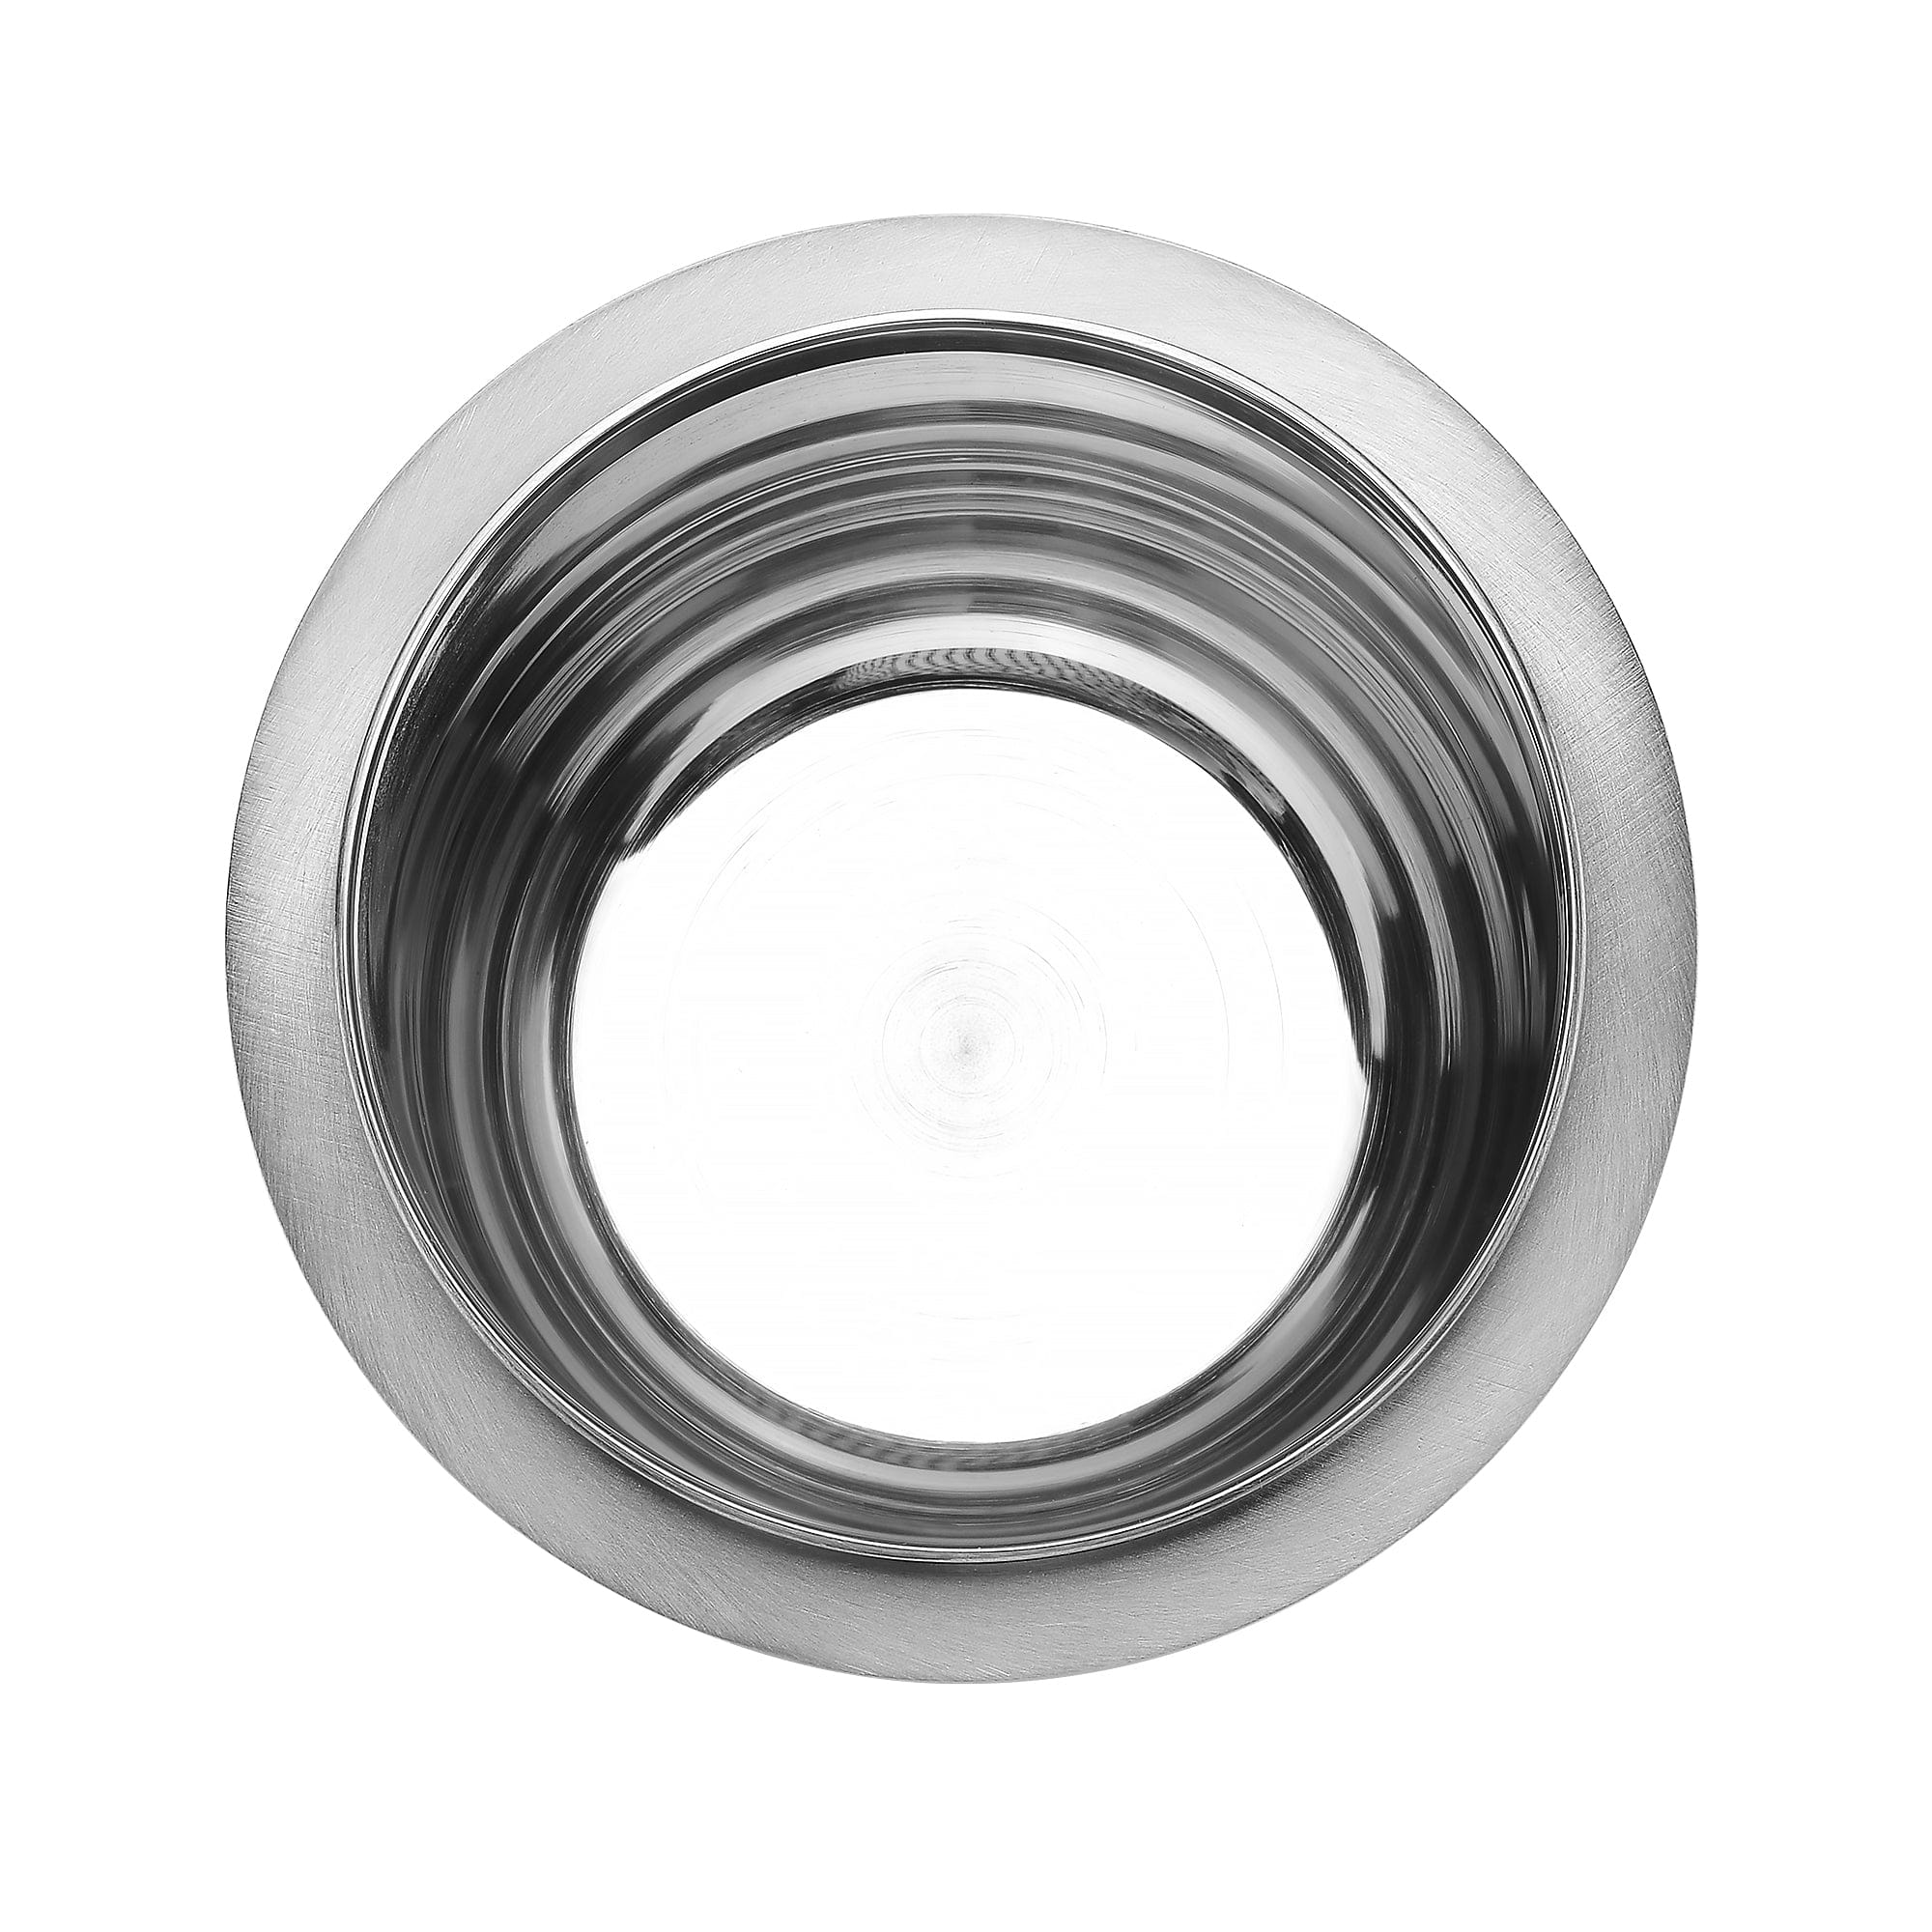 Normcore / 58mm Portafilter Dosing Cup